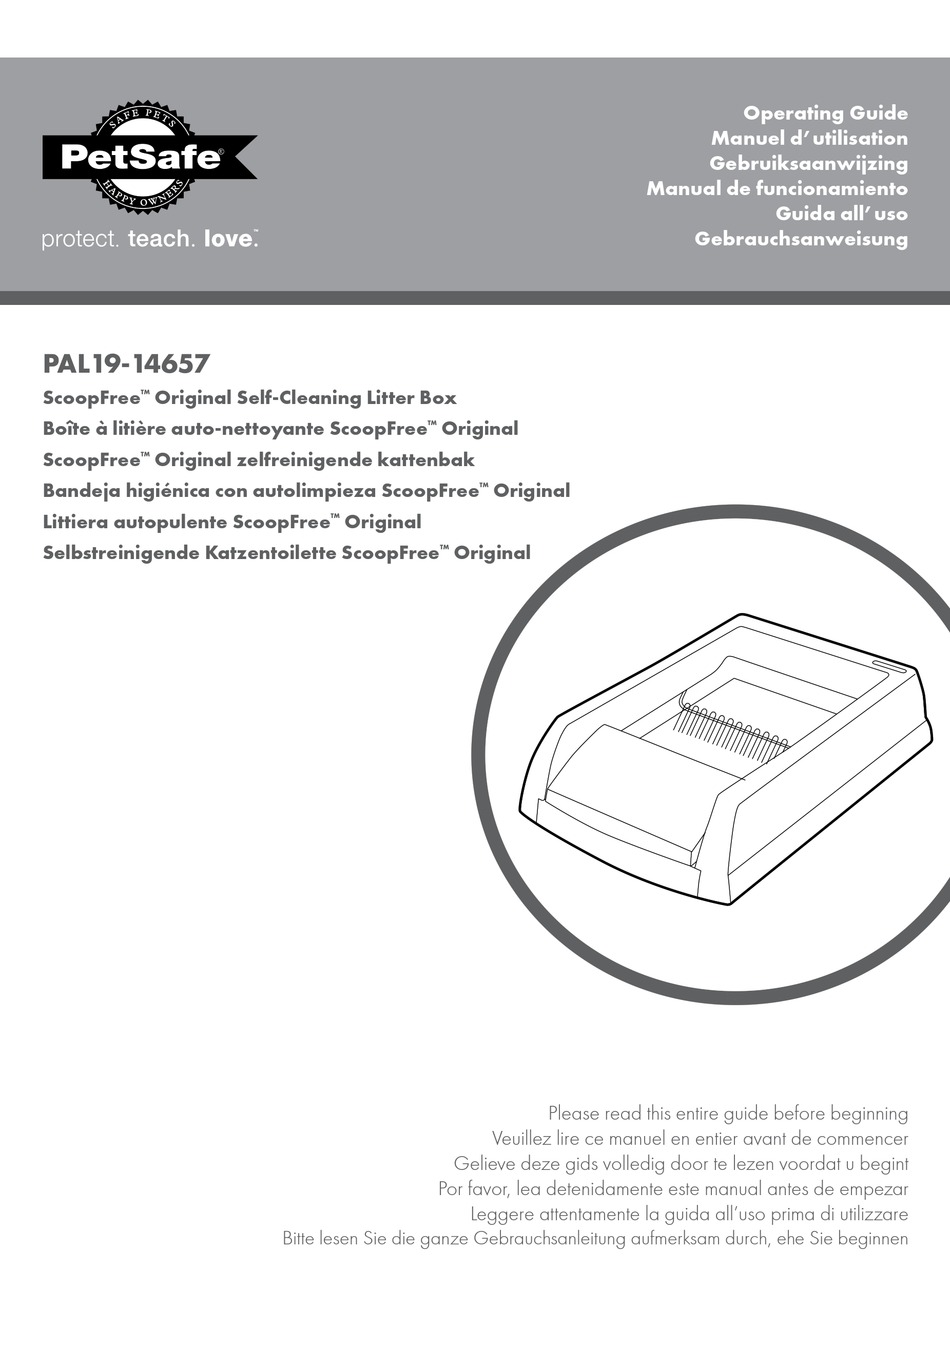 petsafe-scoopfree-pal19-14657-operating-manual-pdf-download-manualslib